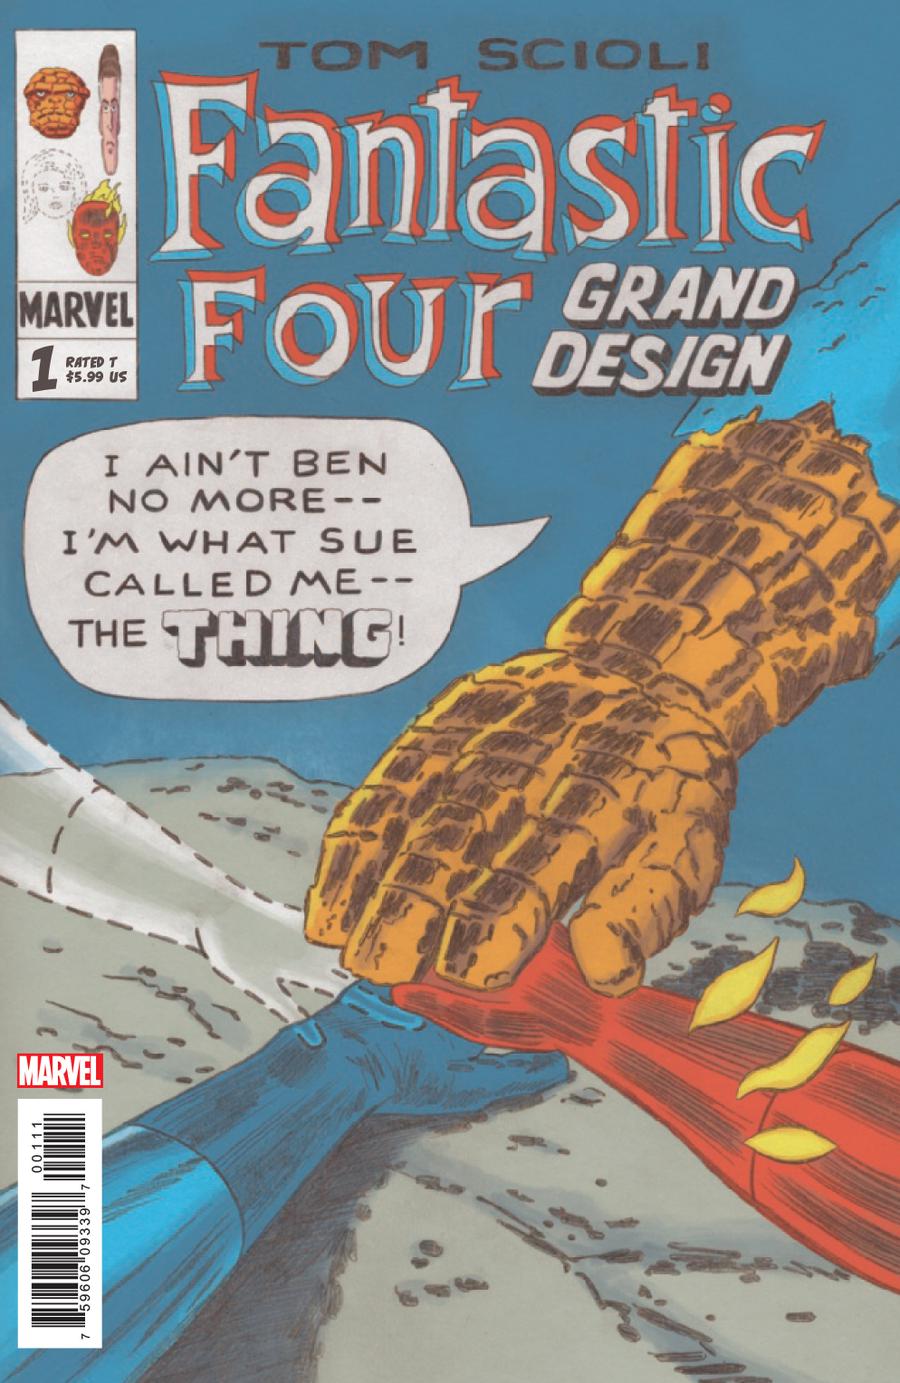 Fantastic Four Grand Design #1 Cover A Regular Tom Scioli Cover